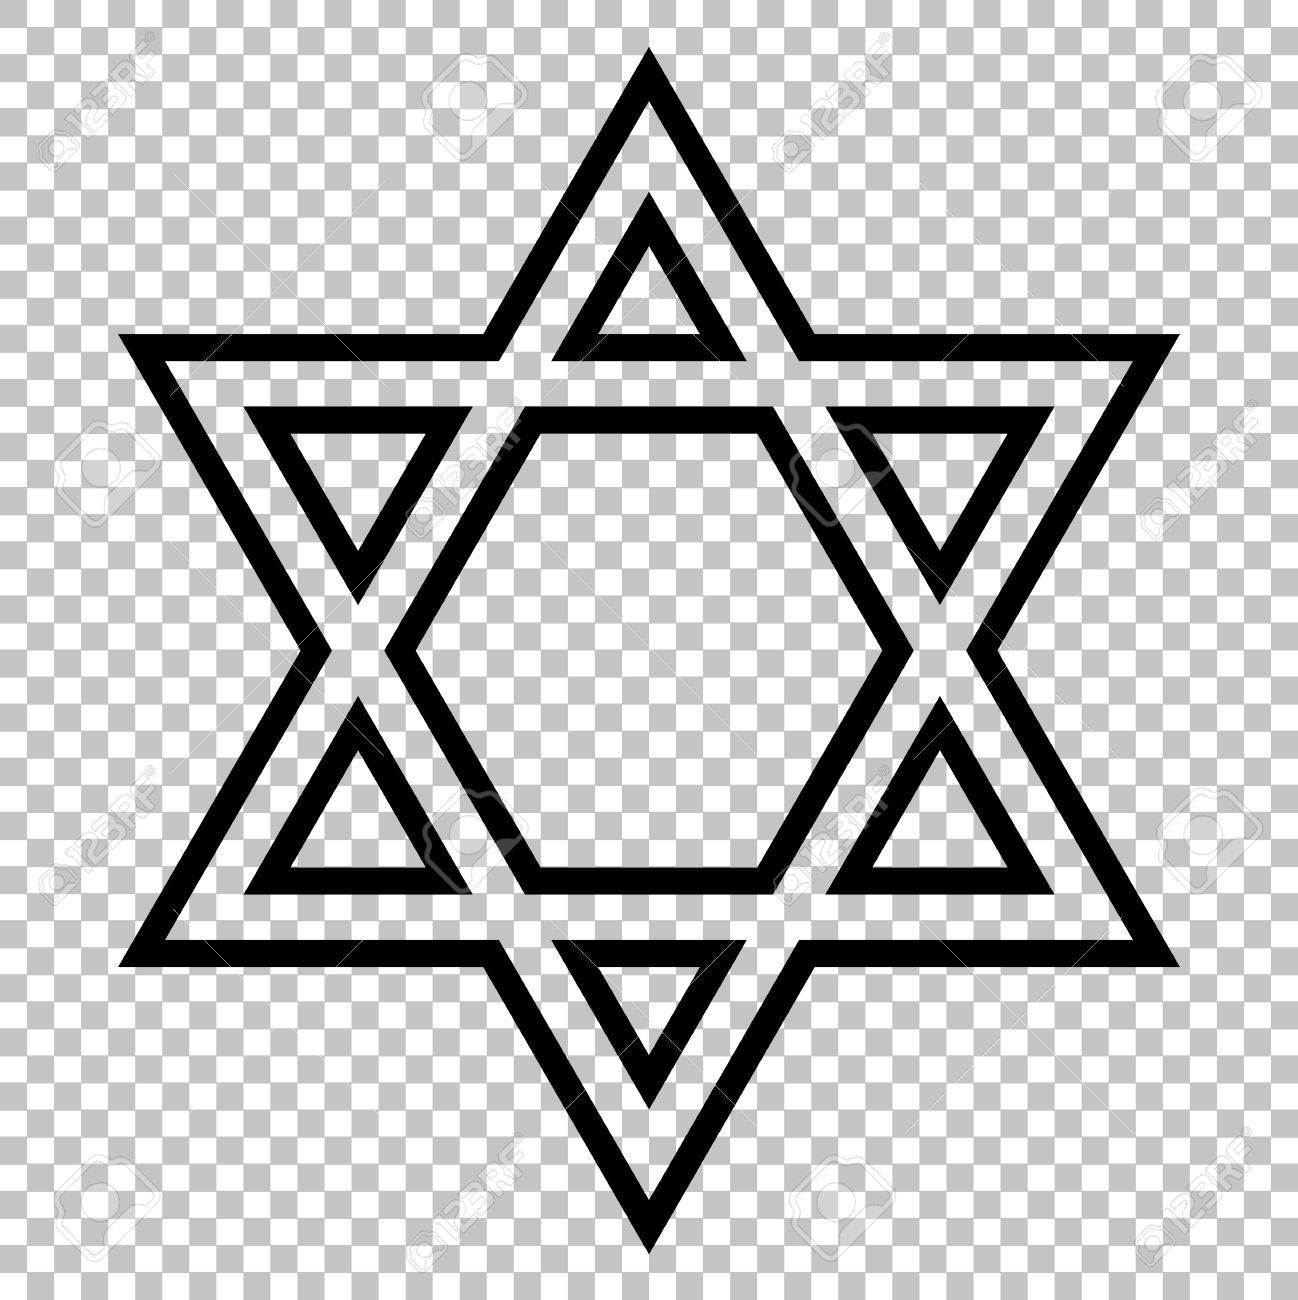 Star Shield Magen David Symbol Of Israel On Transparent